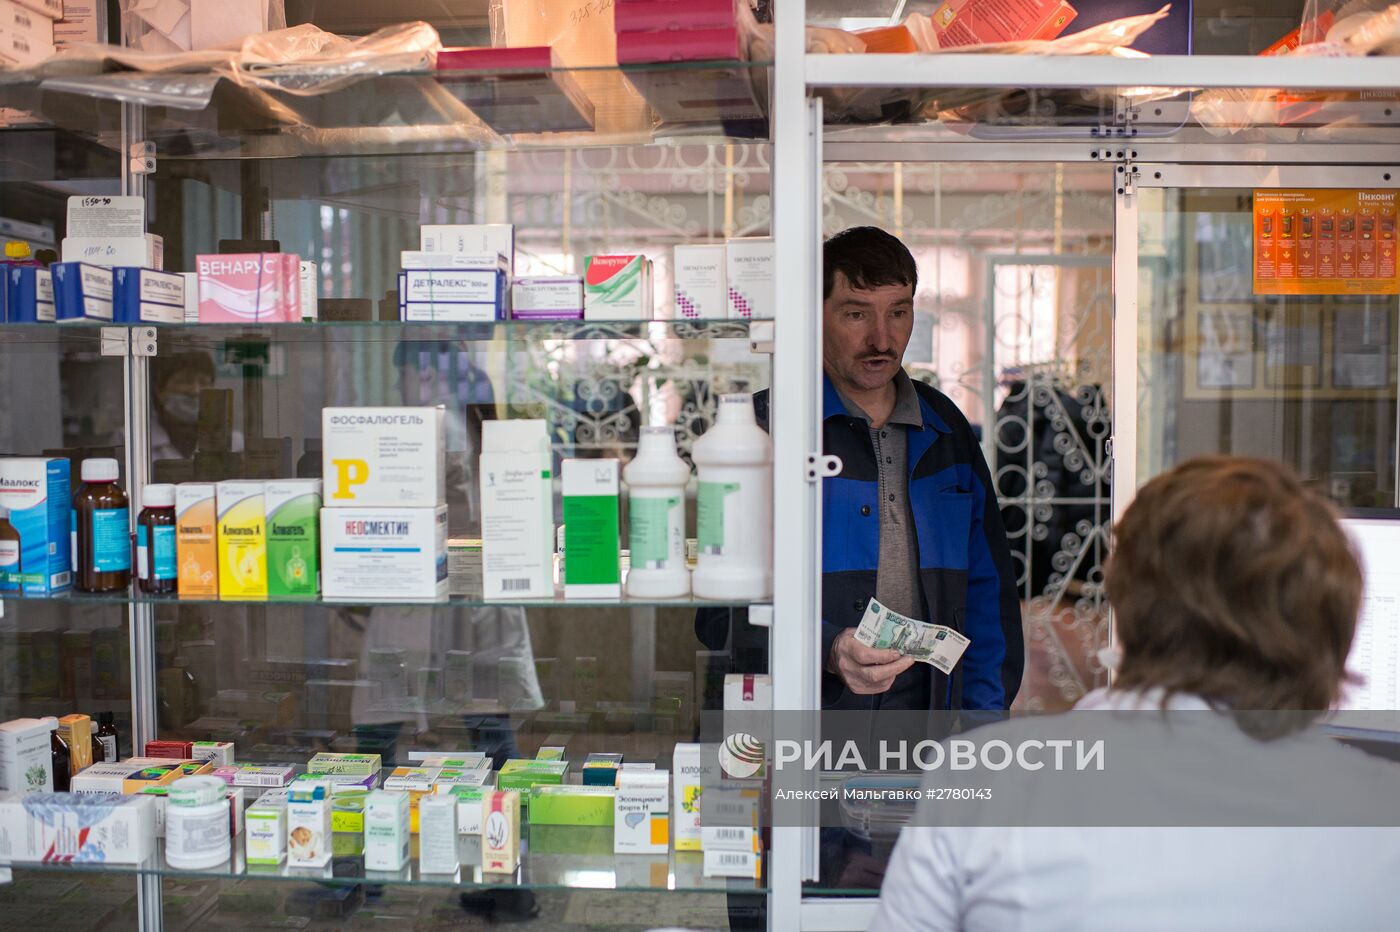 Сезонный рост заболеваемости гриппом и ОРВИ в России